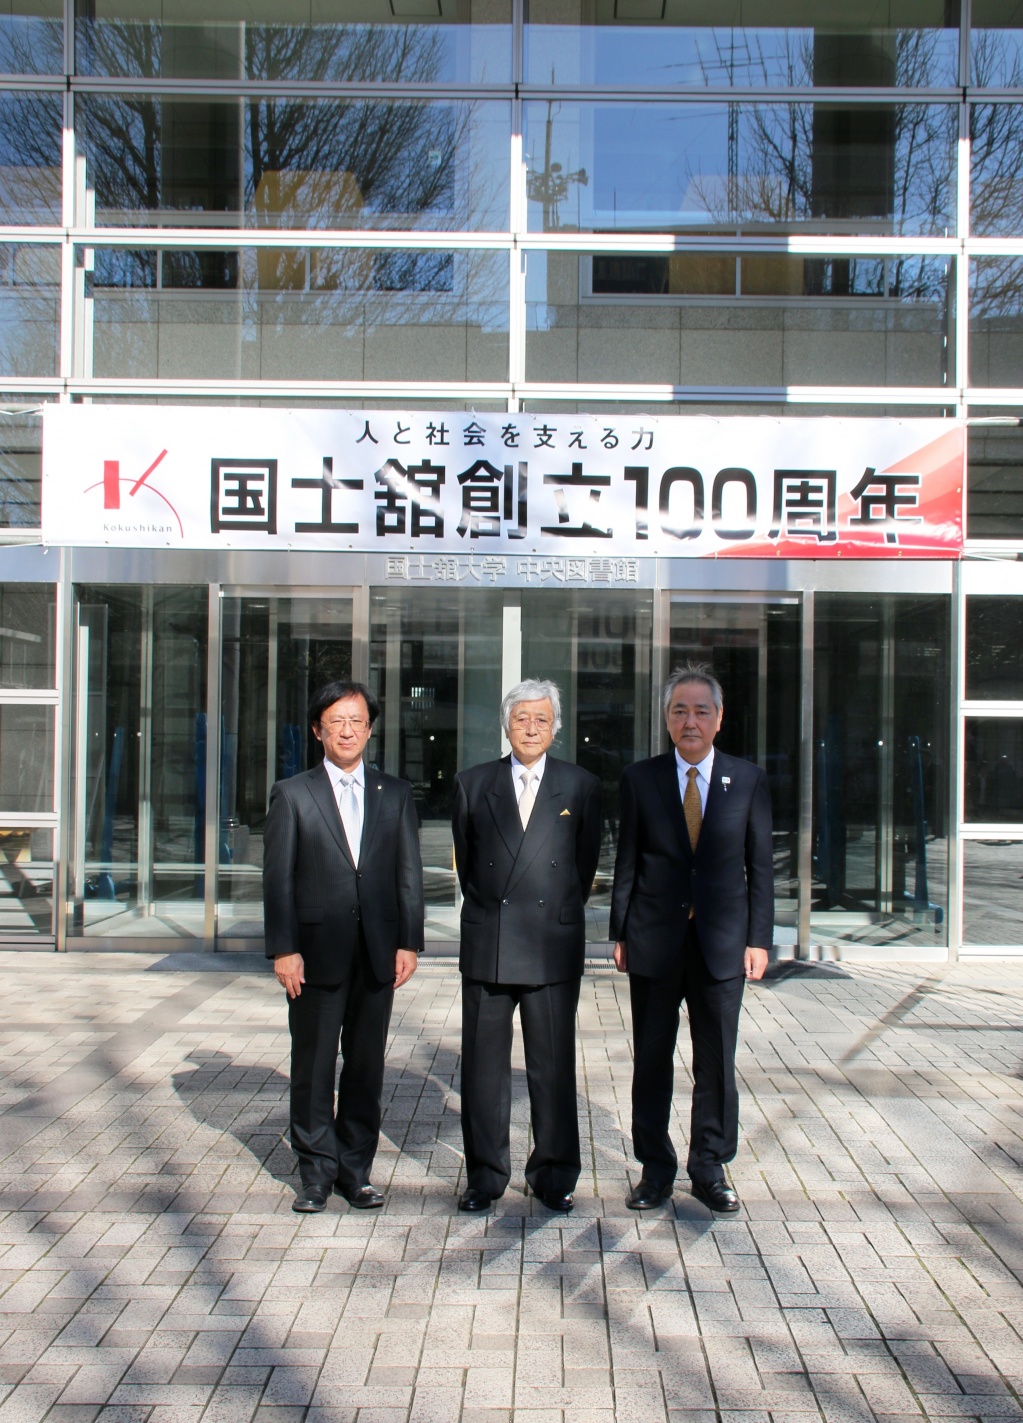 中央図書館入口に掲げられた創立100周年を祝う横断幕の前で。
左から佐藤学長、大澤理事長、福田校長